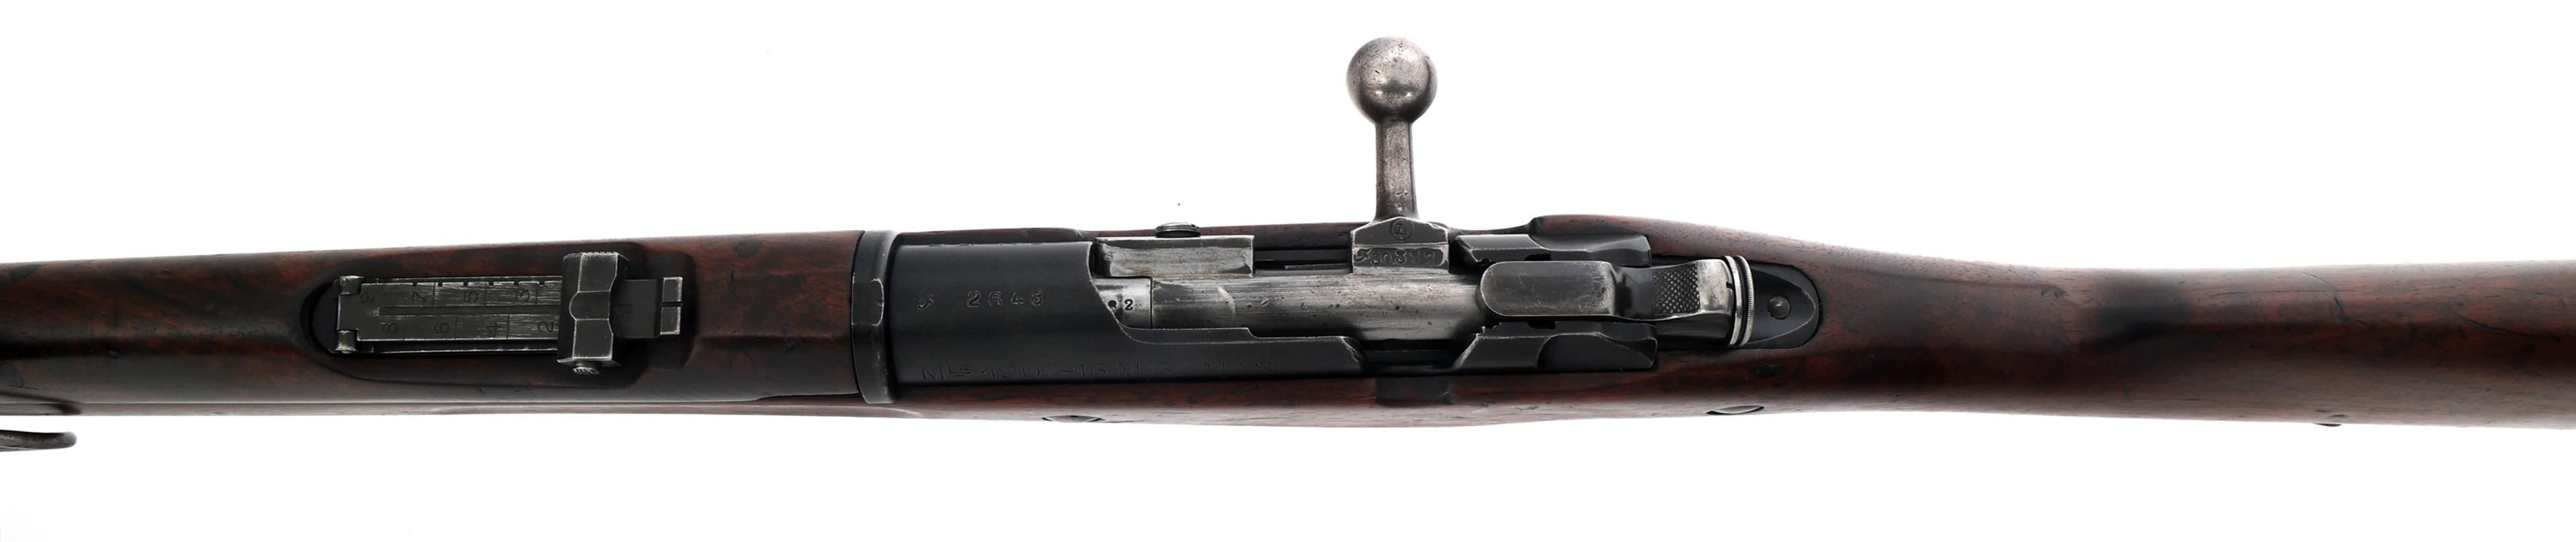 FRENCH MAS MODEL 1907/15 M34 7.5x54mm CAL RIFLE